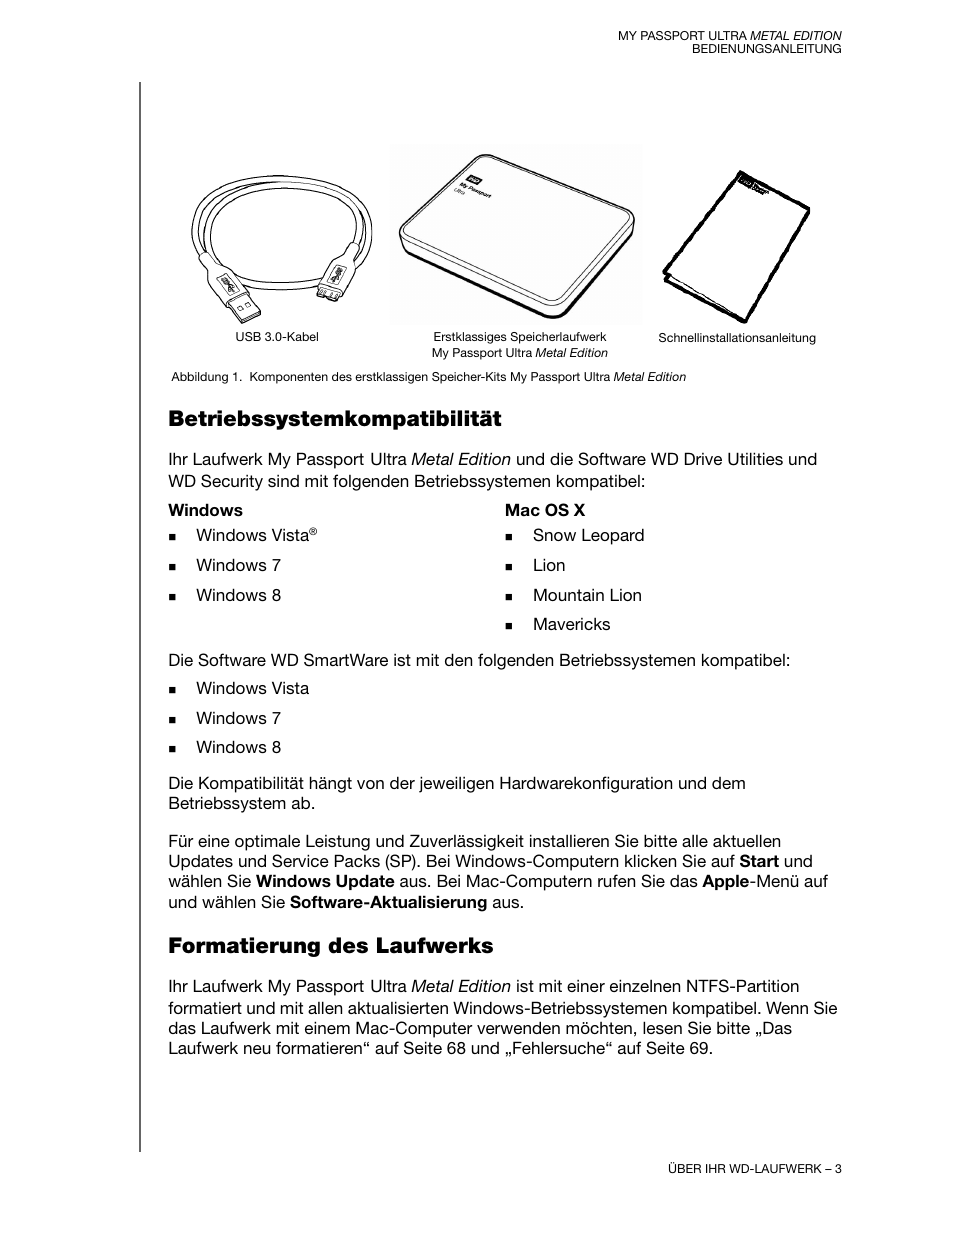 Betriebssystemkompatibilität, Formatierung des laufwerks | Western Digital My Passport Ultra Metal User Manual Benutzerhandbuch | Seite 8 / 89